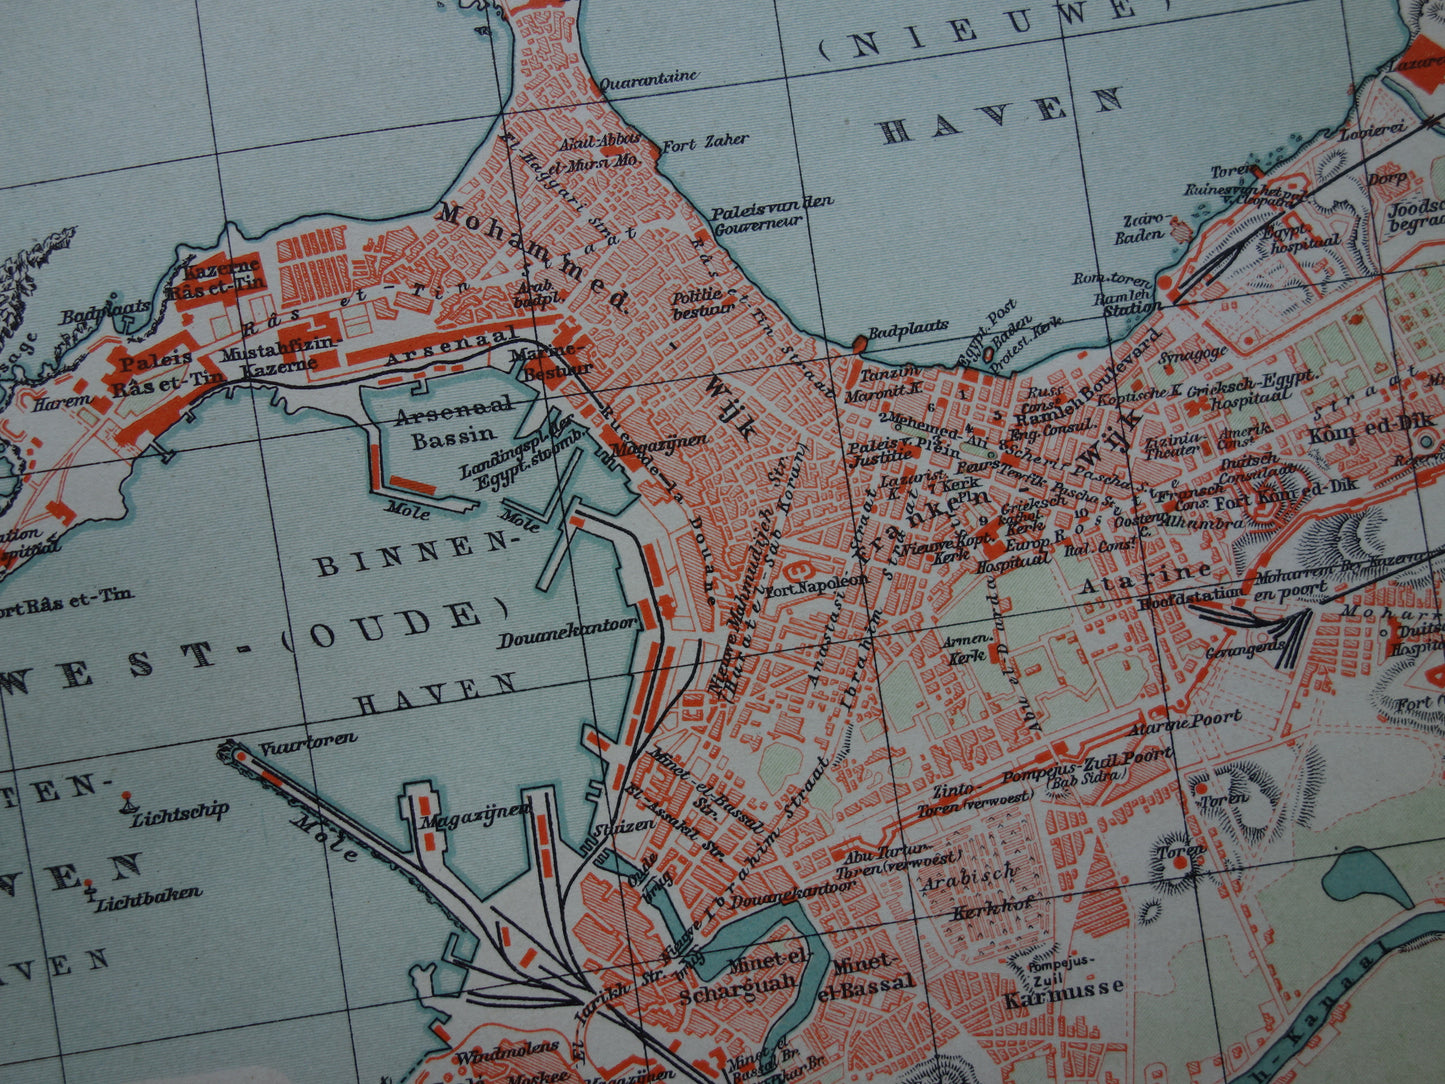 Oude kaart van Alexandrië uit 1905 originele Nederlandse antieke plattegrond vintage kaarten Egypte